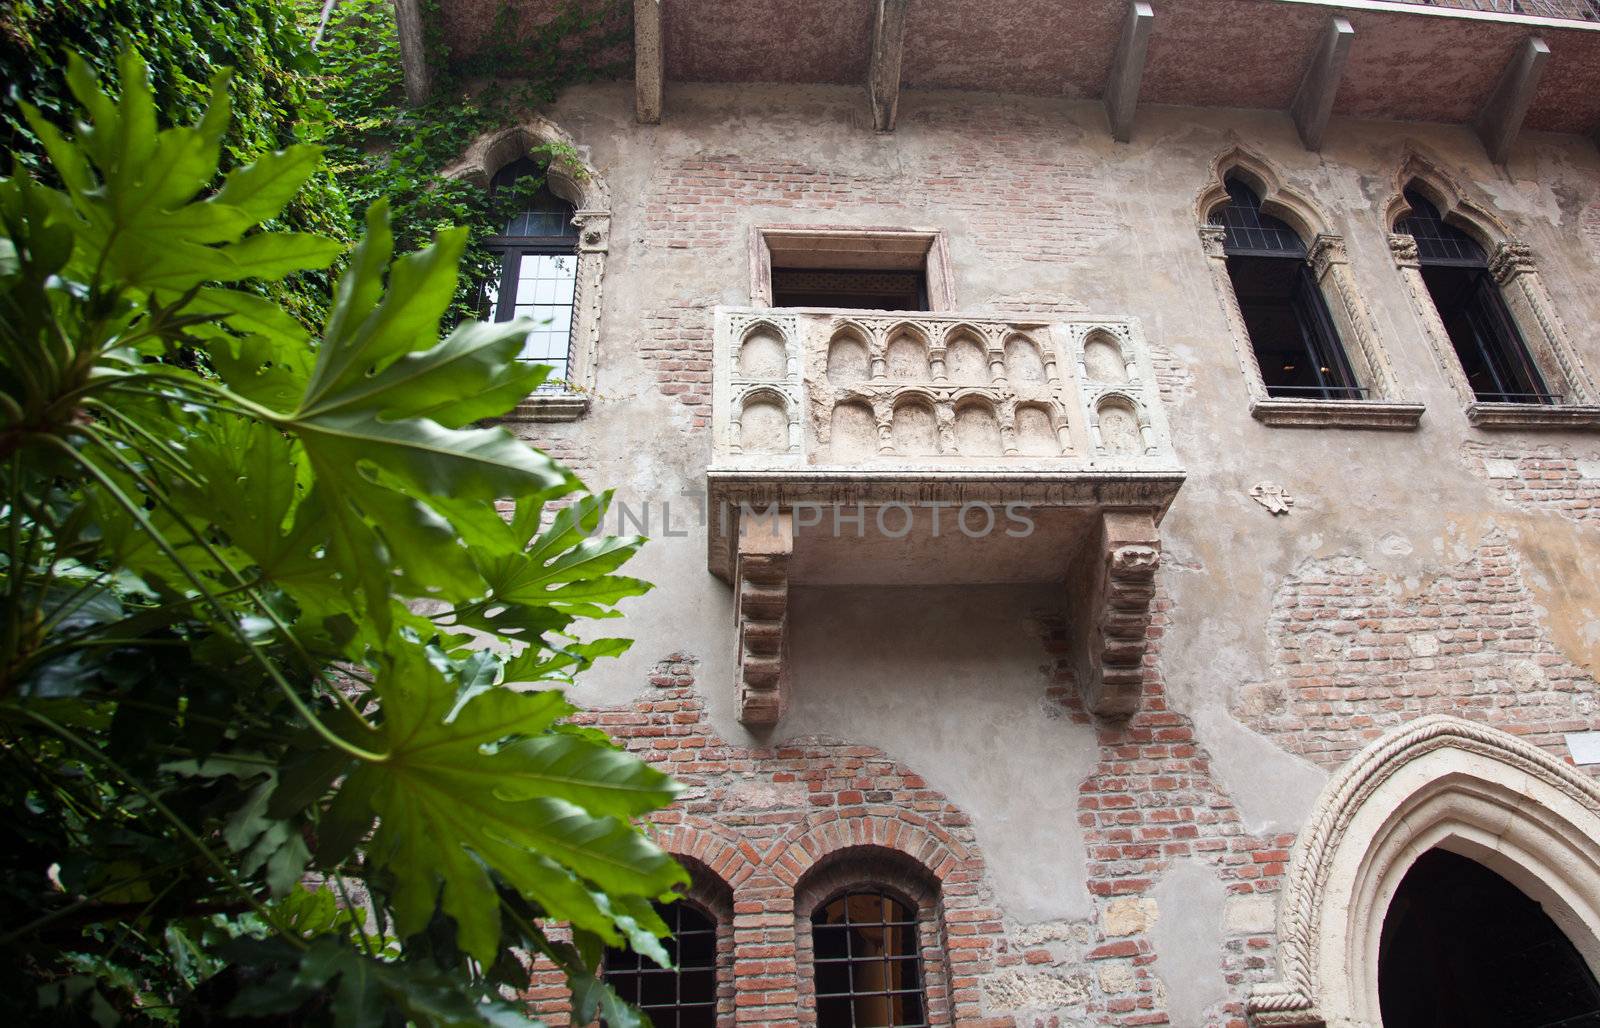 Juliet's balcony in Verona by steheap